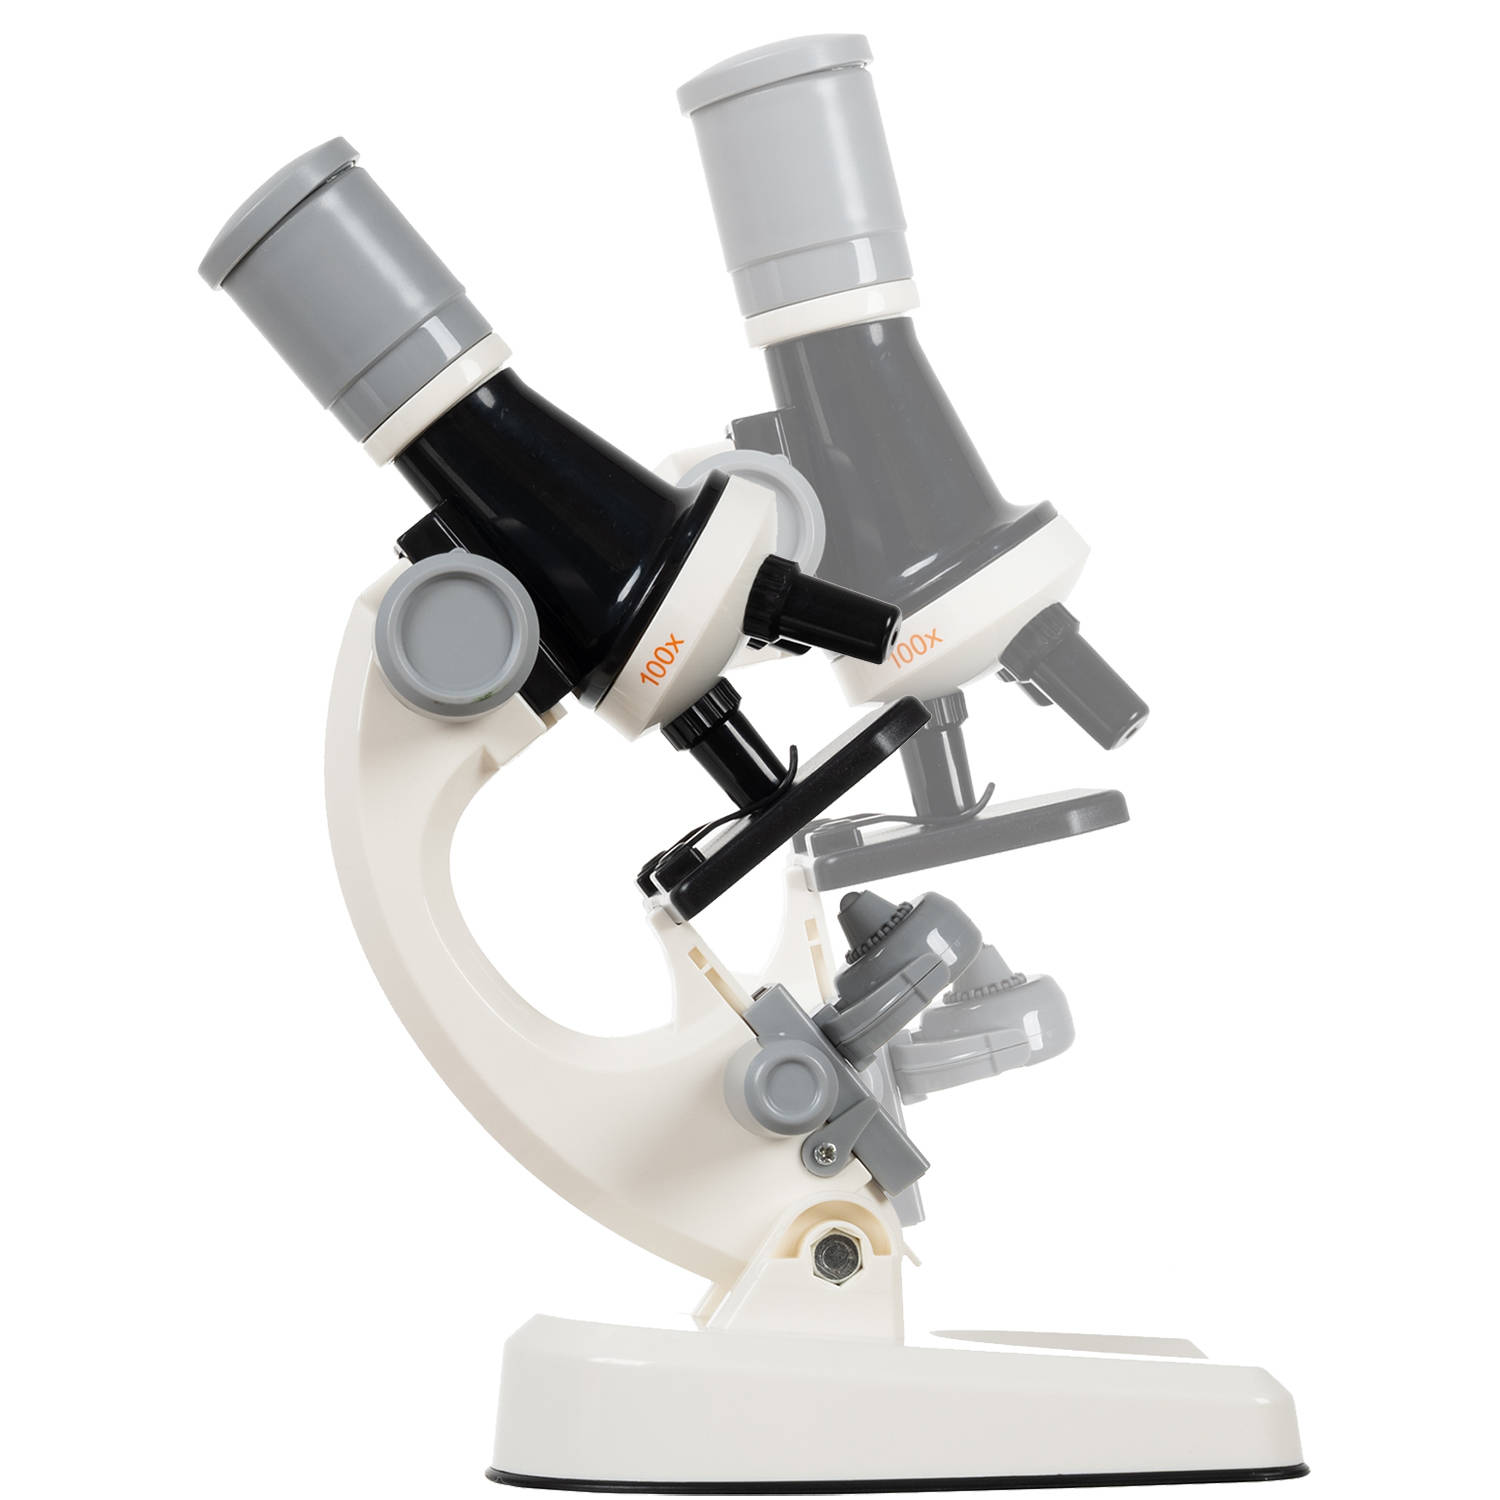 Digitális mikroszkóp LED lámpával és 3 lencsés objektívvel, 100x400x1200x nagyítással (BB-19761) (7)